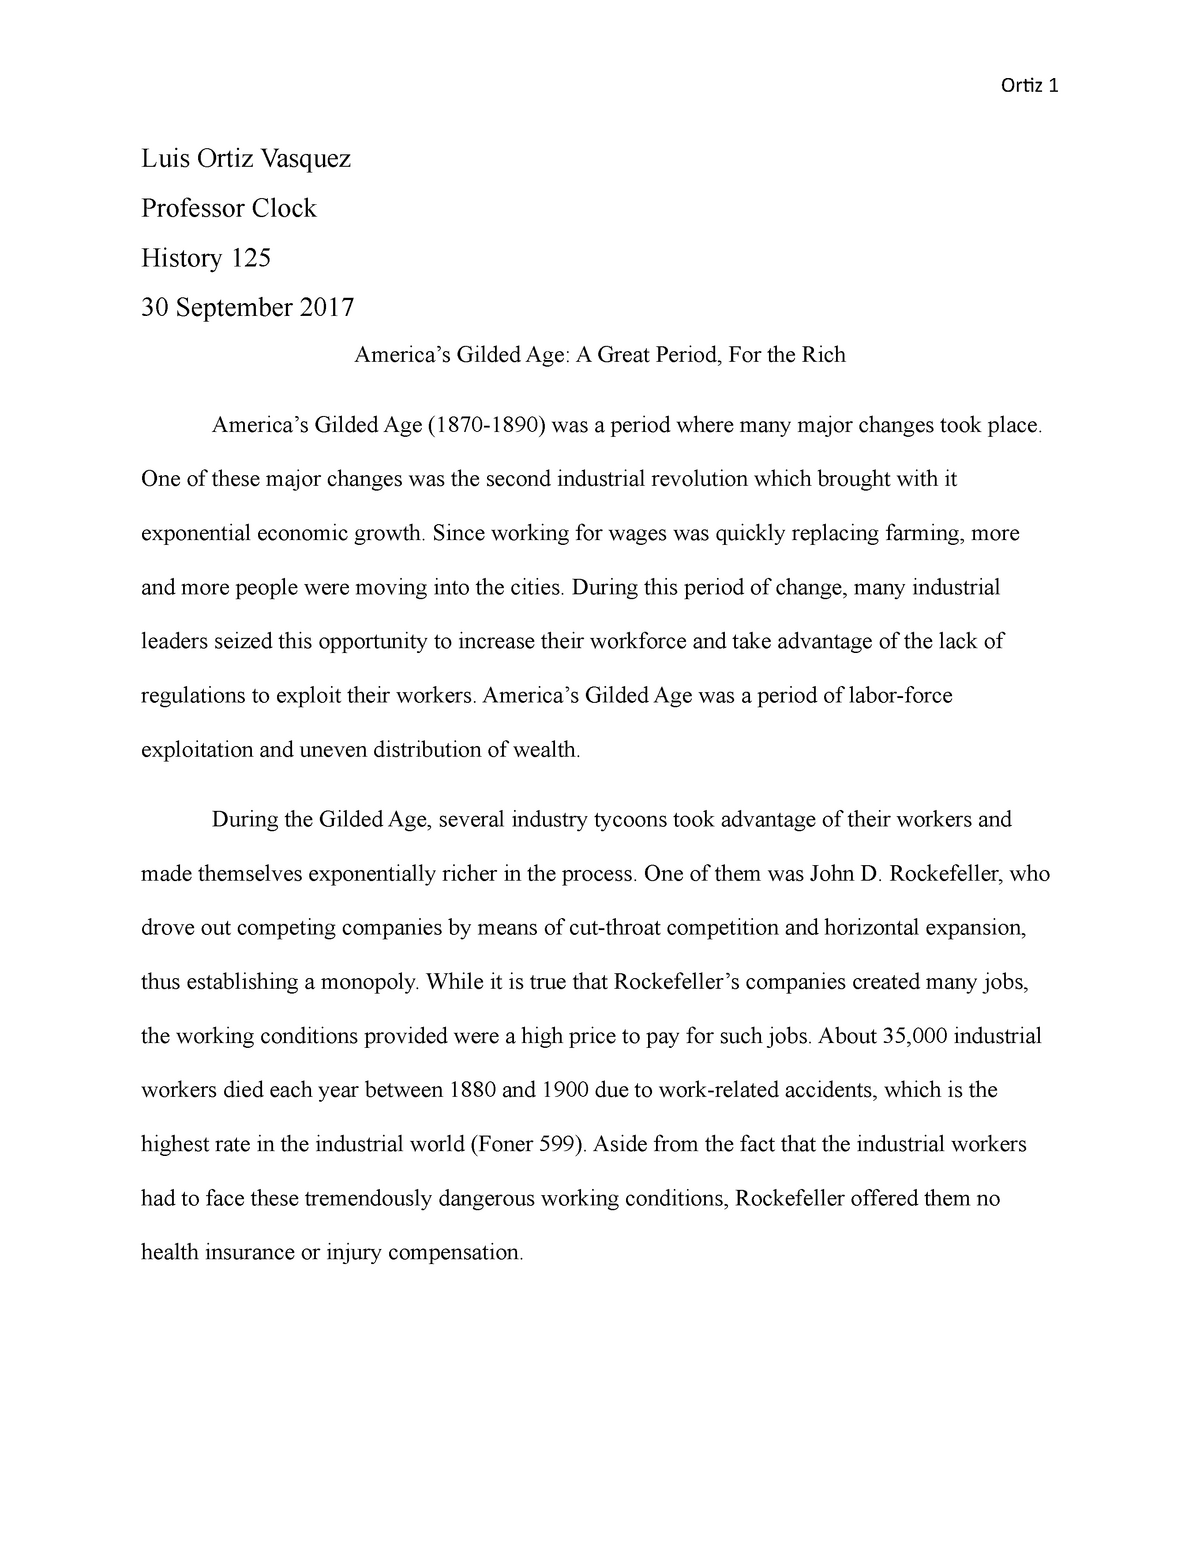 gilded age essay pdf